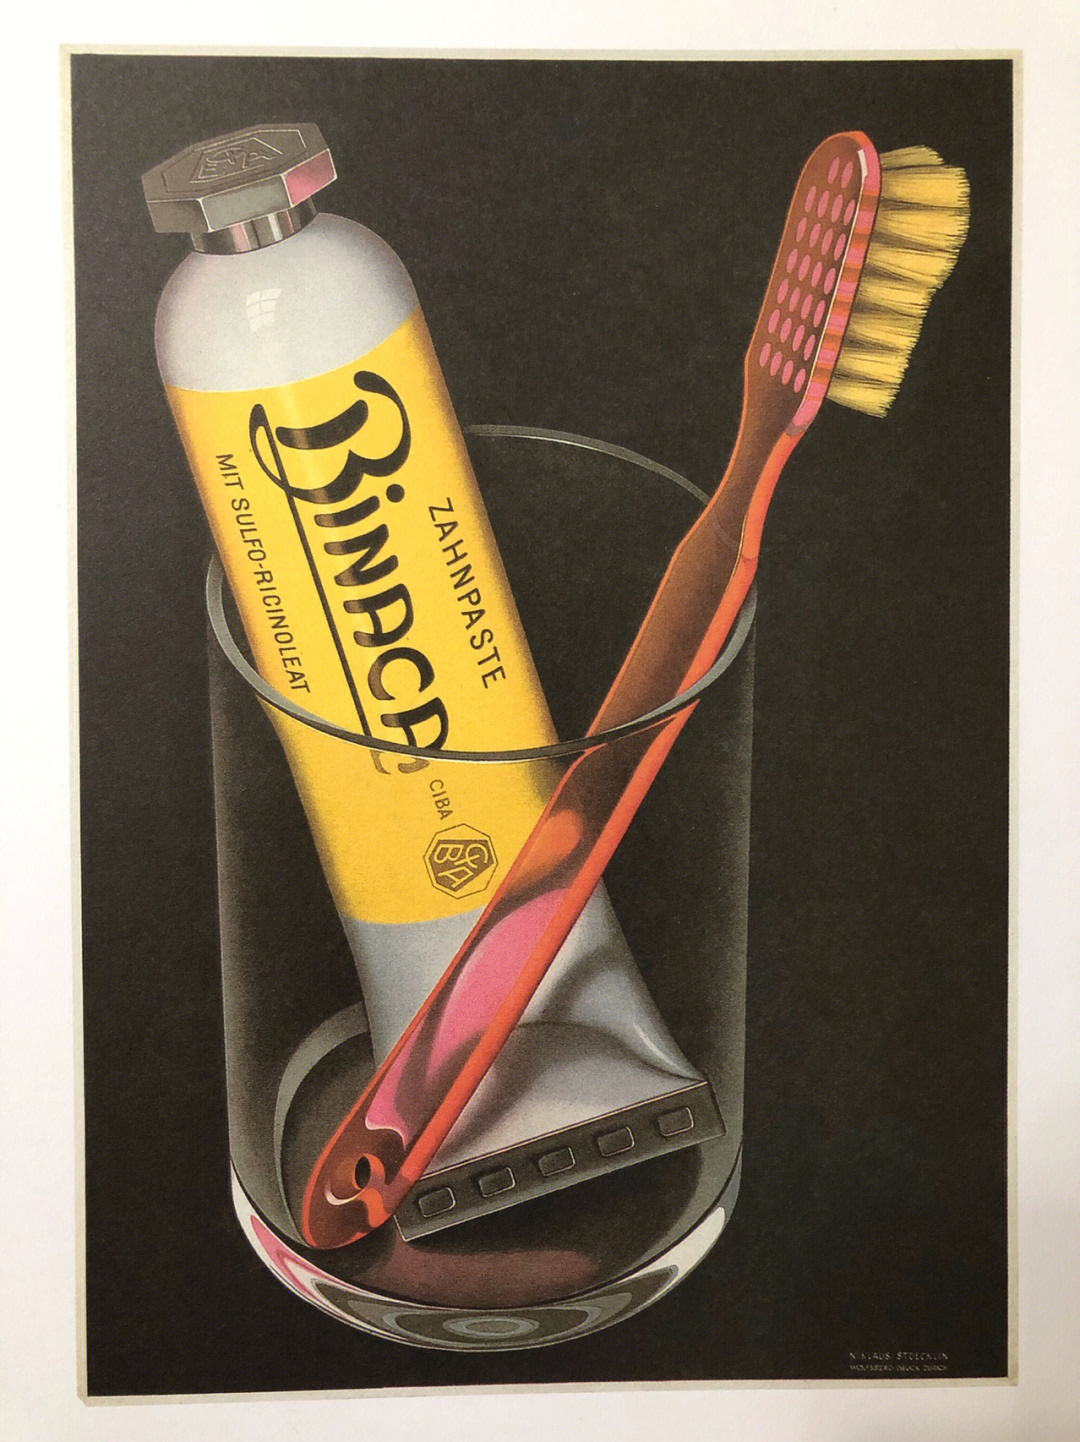 比卡诺牙膏海报设计尼克劳斯斯托克林